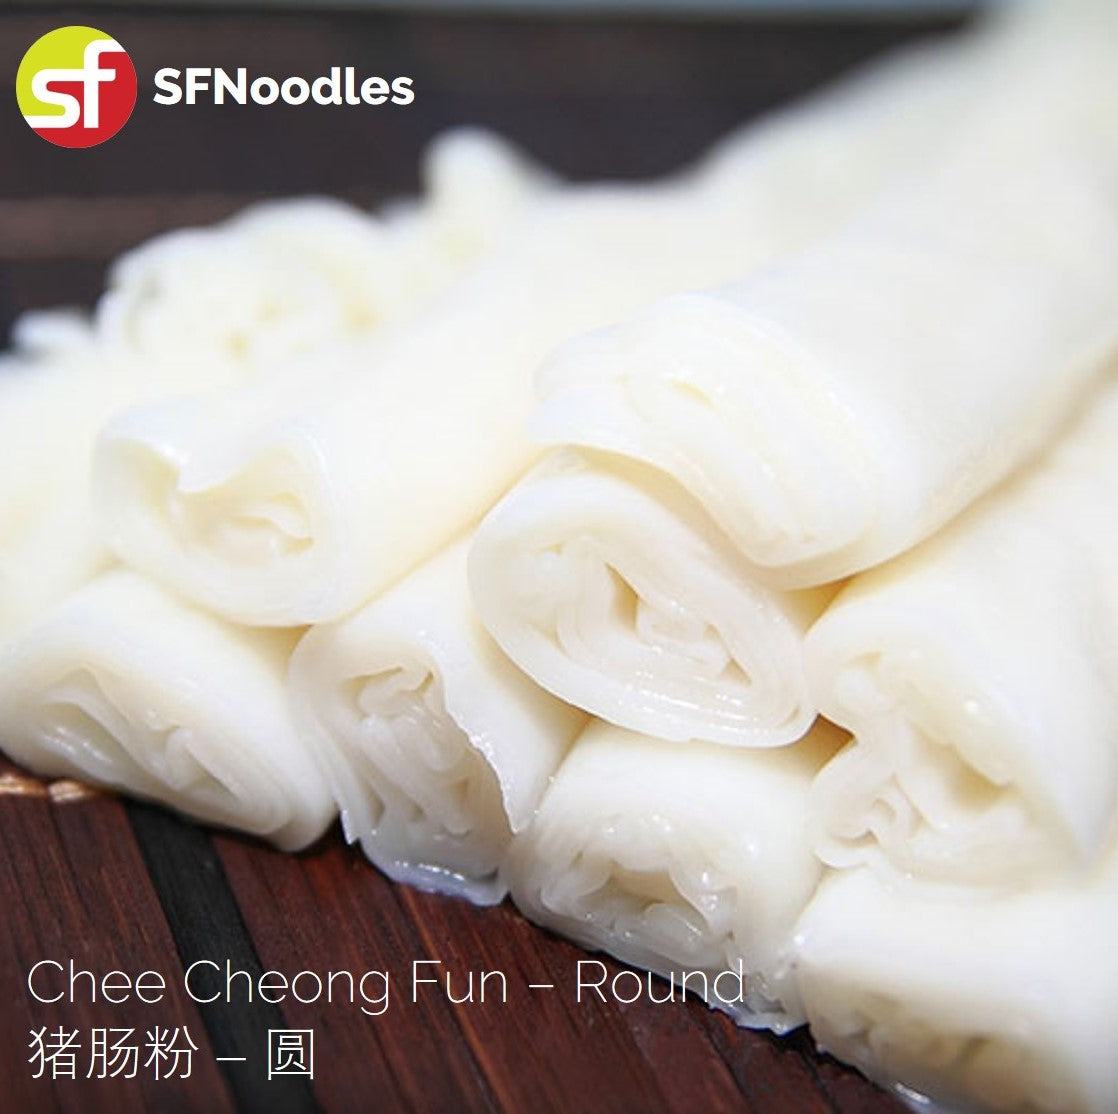 Chee Cheong Fun - Flat / Round (猪肠粉 - 扁 / 圆)